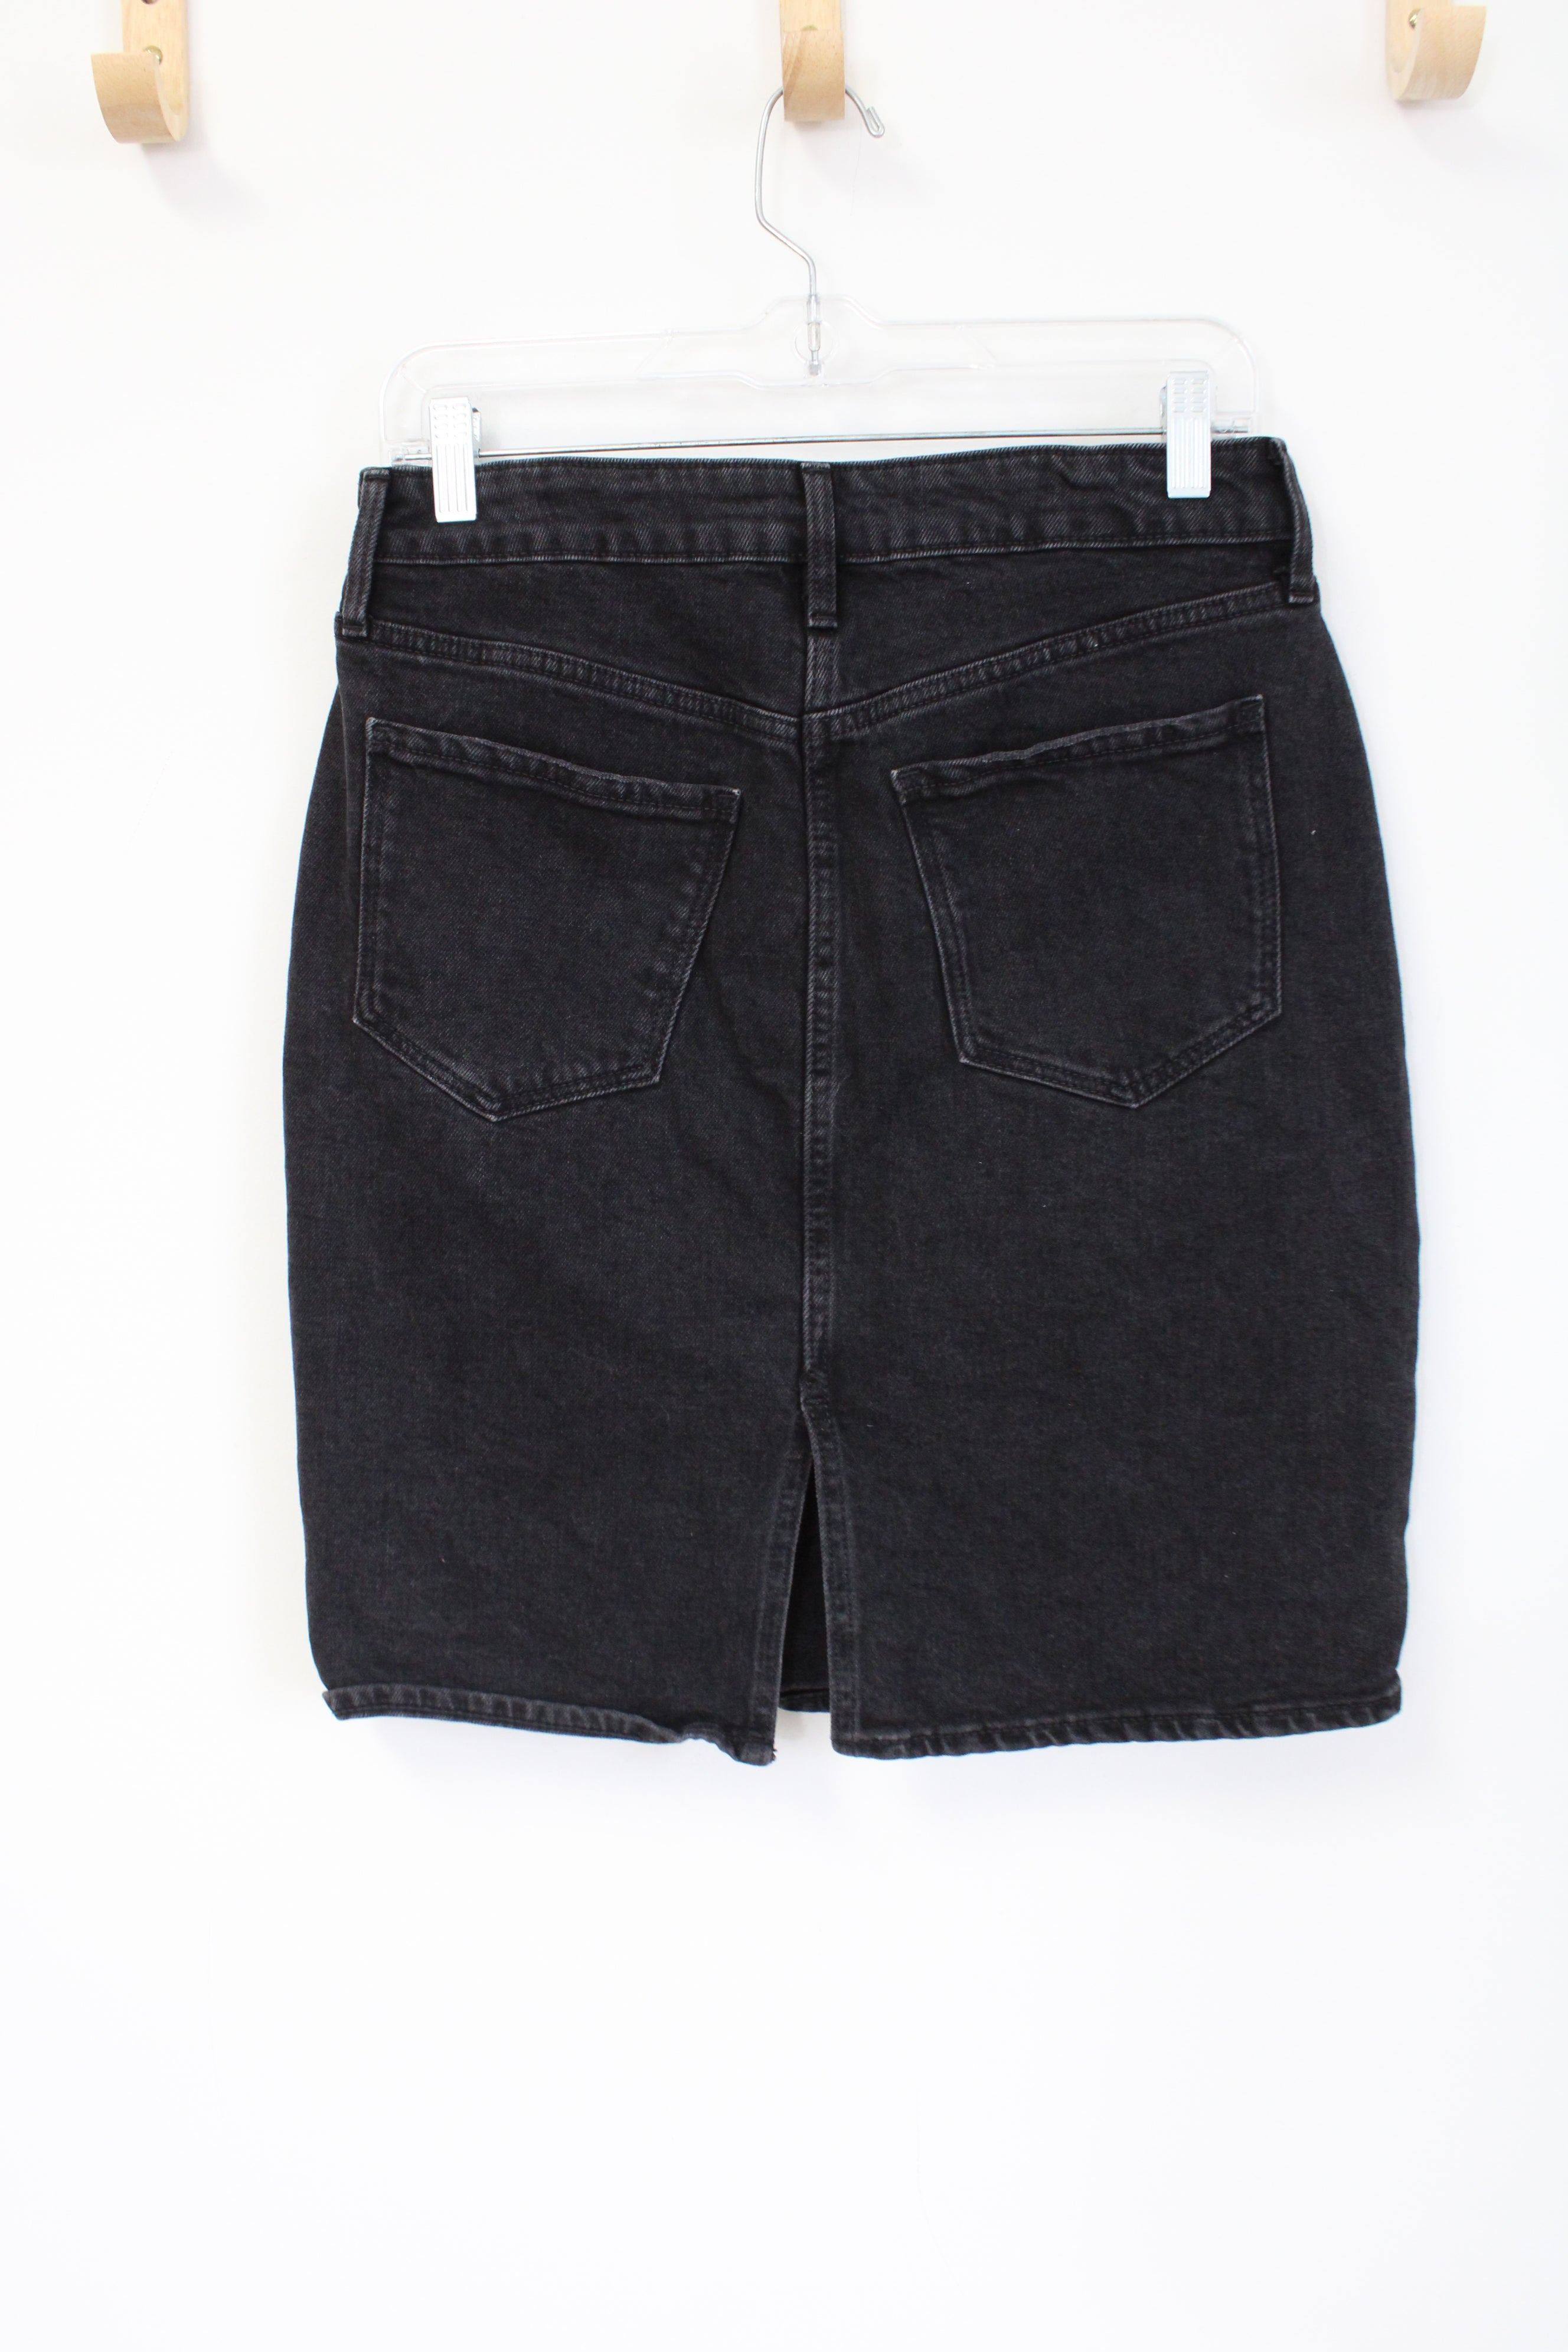 Old Navy Black Denim Skirt | 6